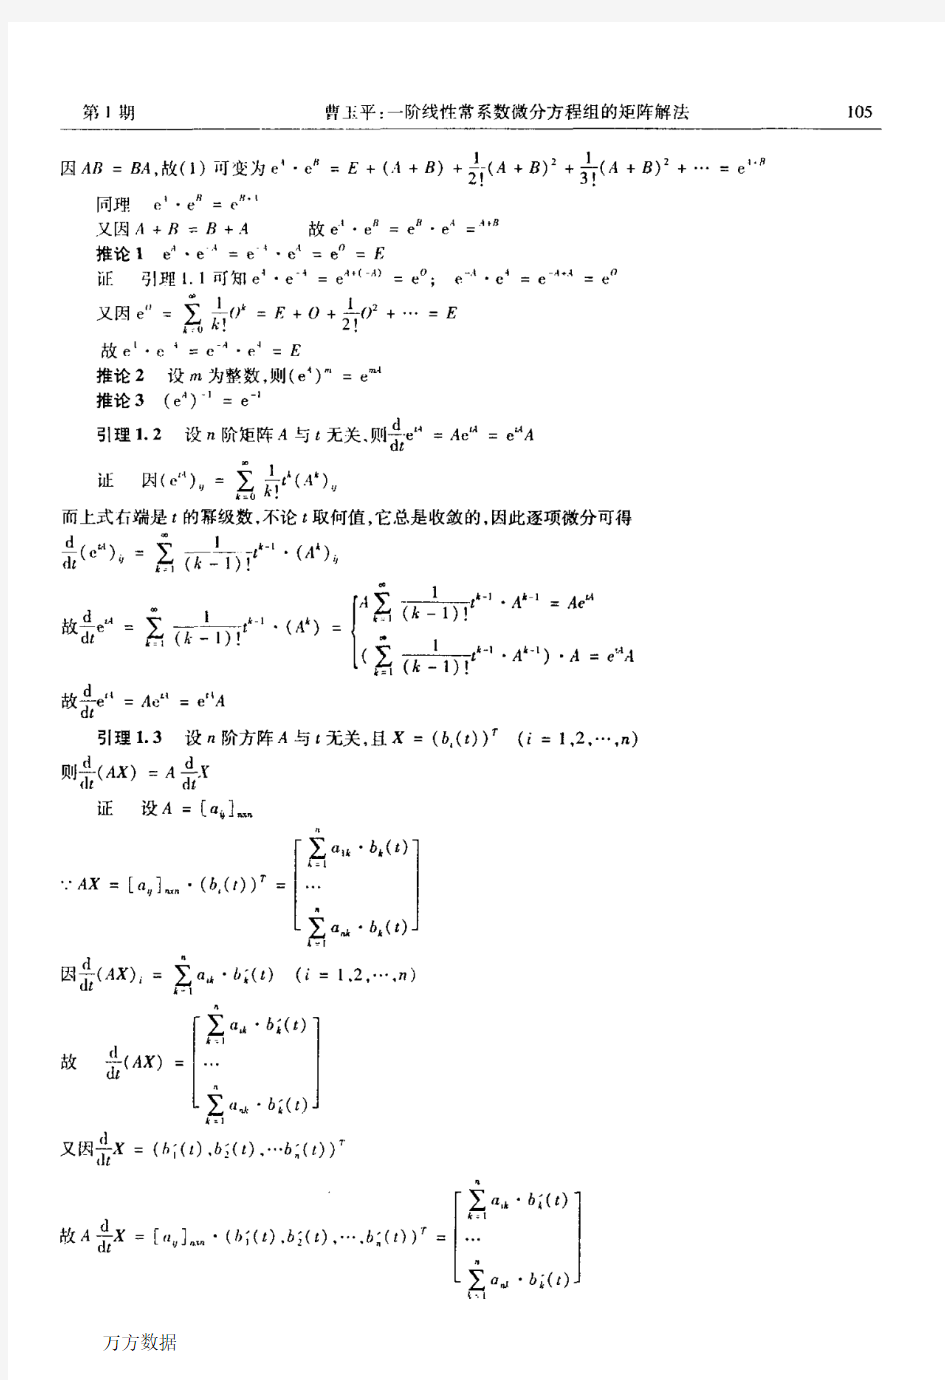 一阶线性常系数微分方程组的矩阵解法